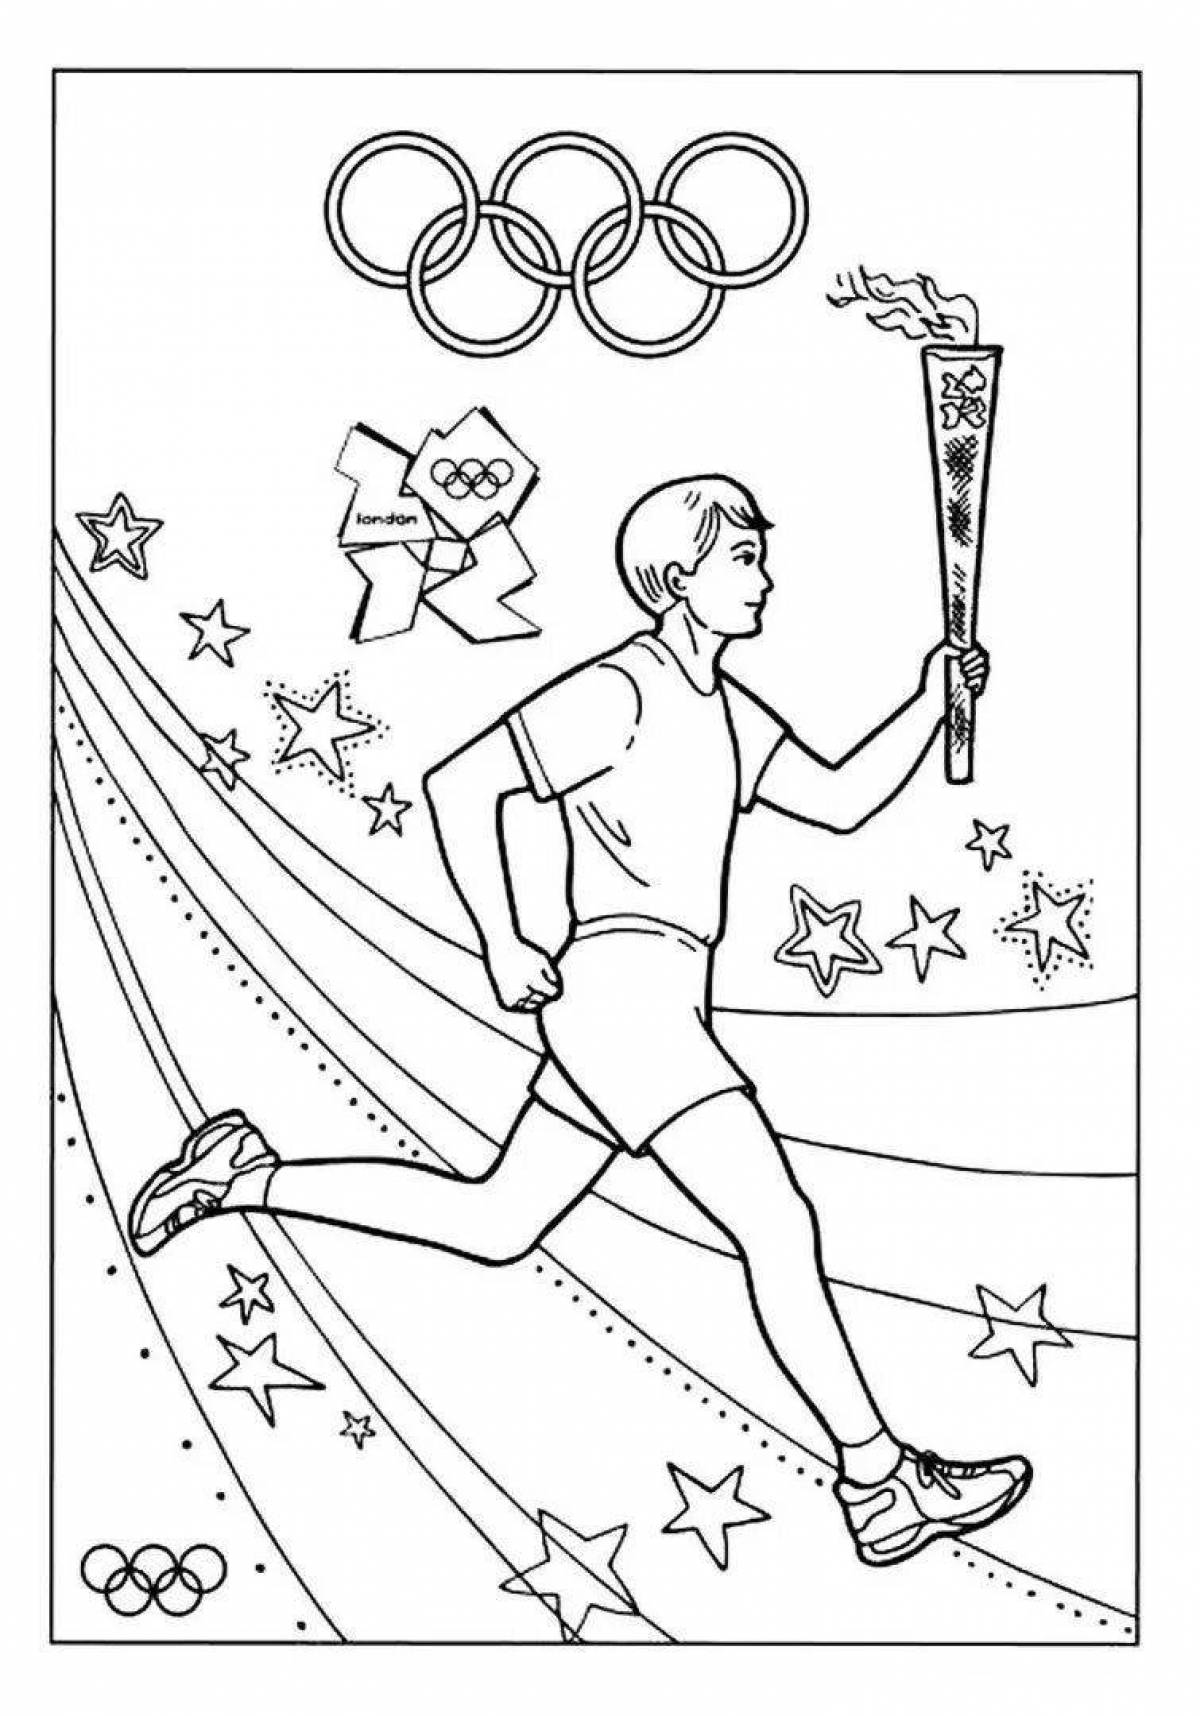 Олимпийские игры рисунок легко. Спортивные раскраски для детей. Раскраска спорт для детей. Рисунок на спортивную тему. Раскраска Олимпийские игры.